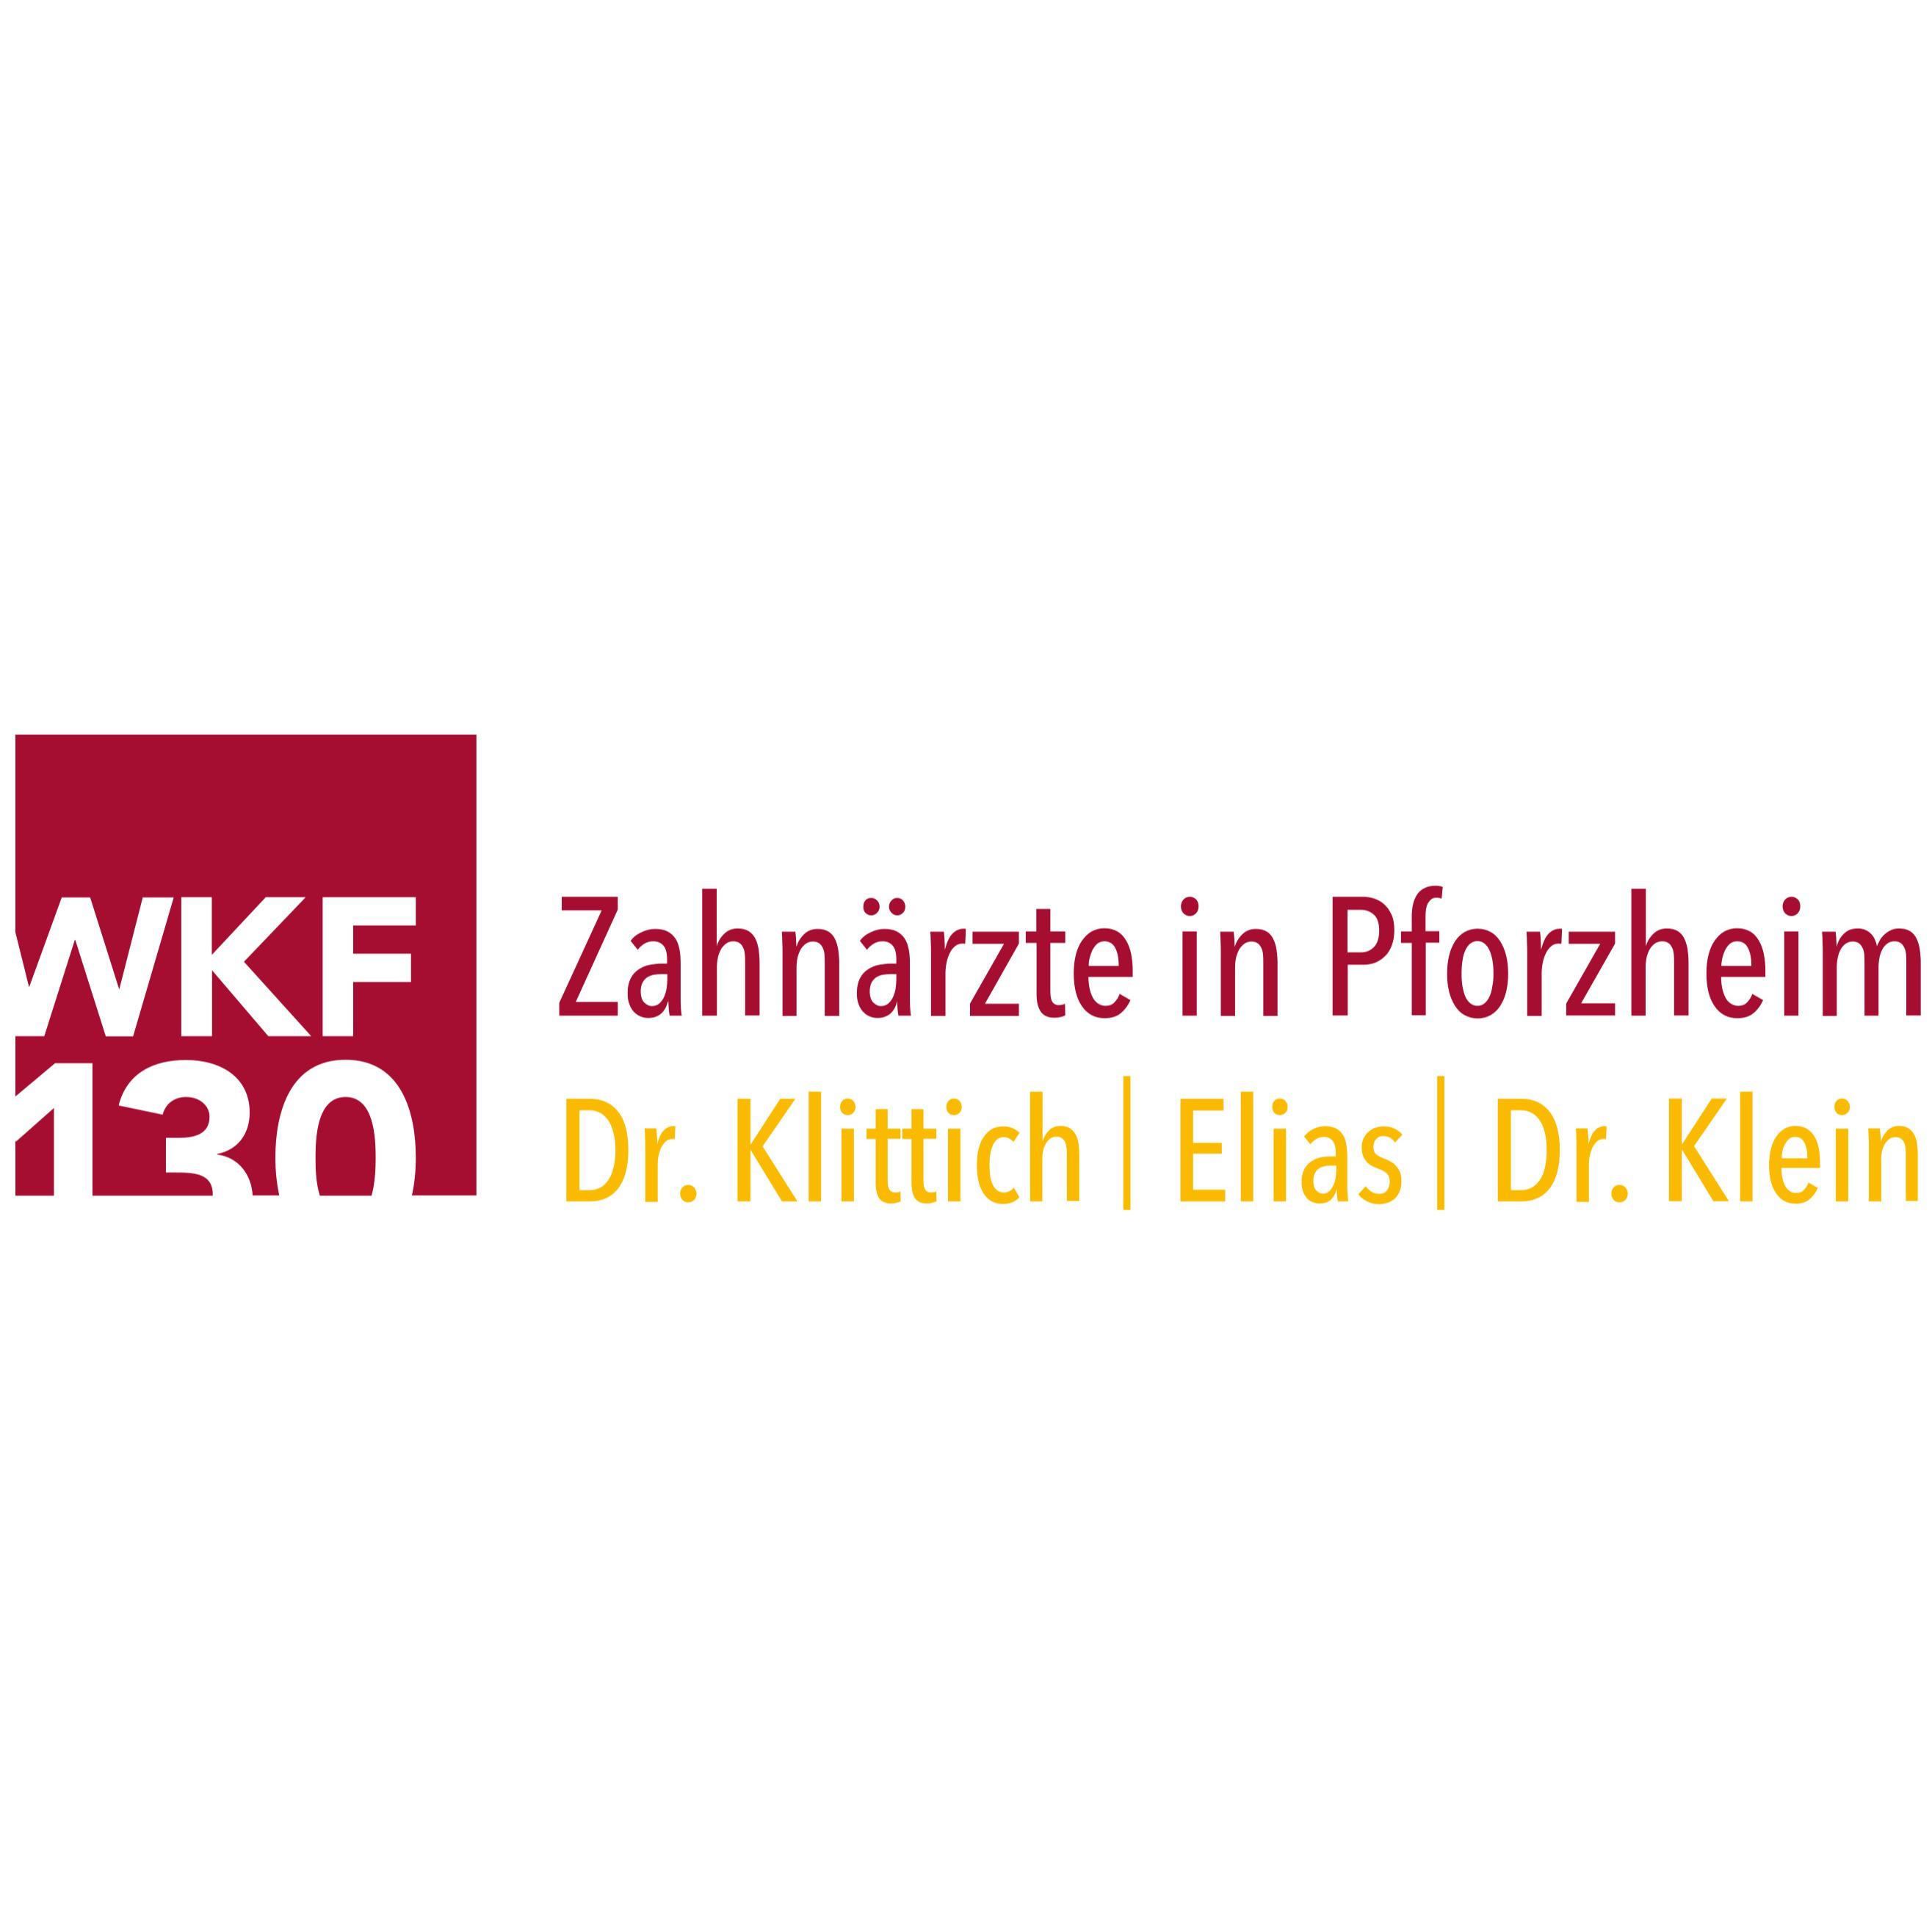 Zahnärzte in Pforzheim - WKF130 in Pforzheim - Logo